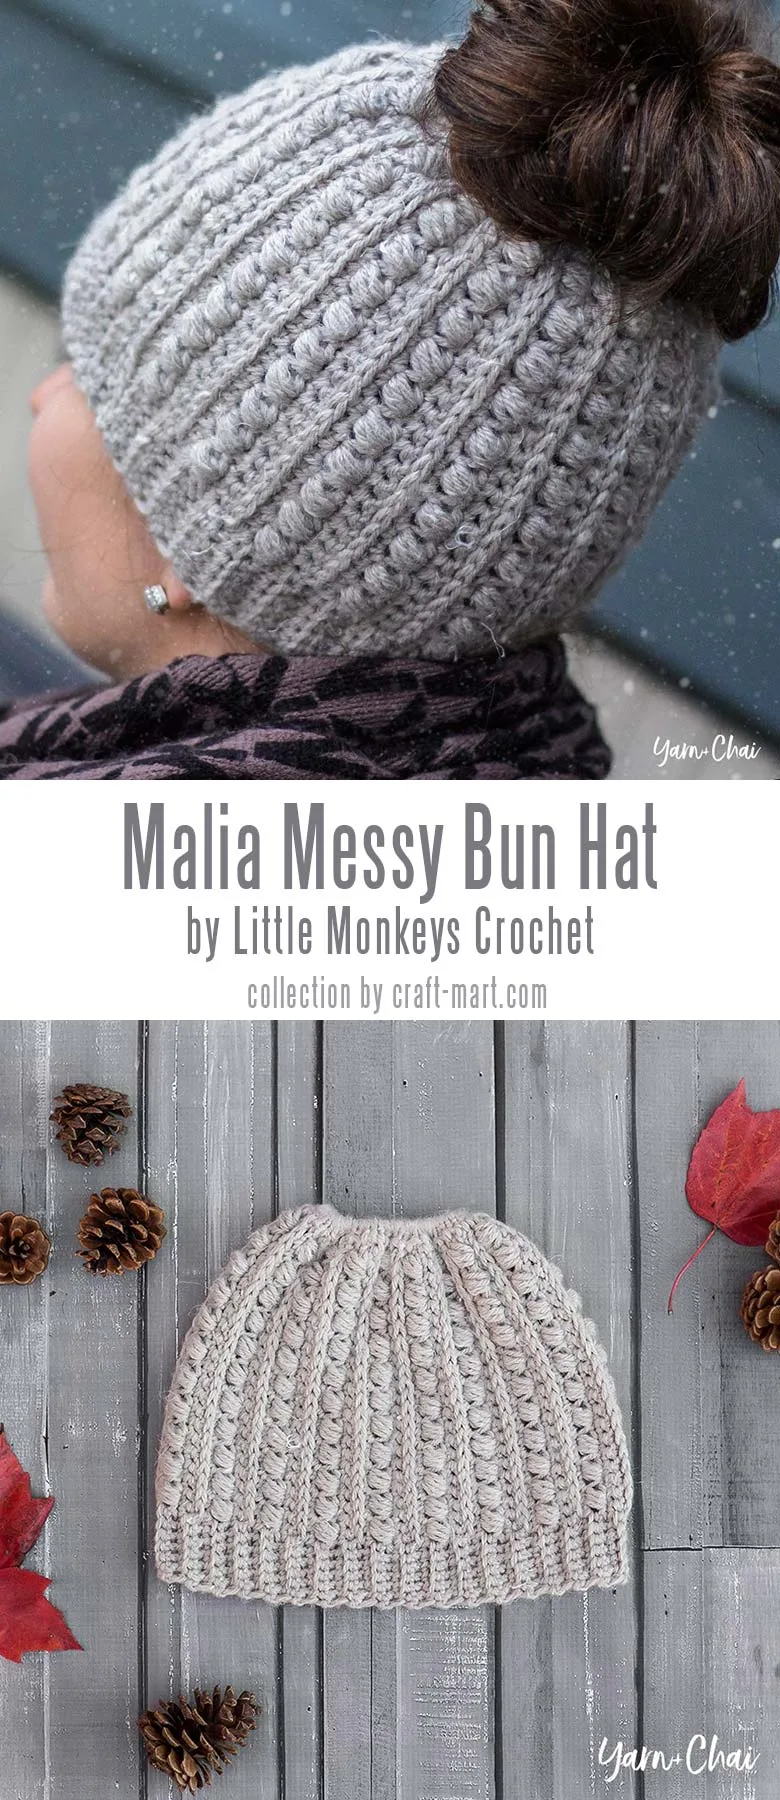 Crochet Beginner Winter Hats - Daisy Farm Crafts